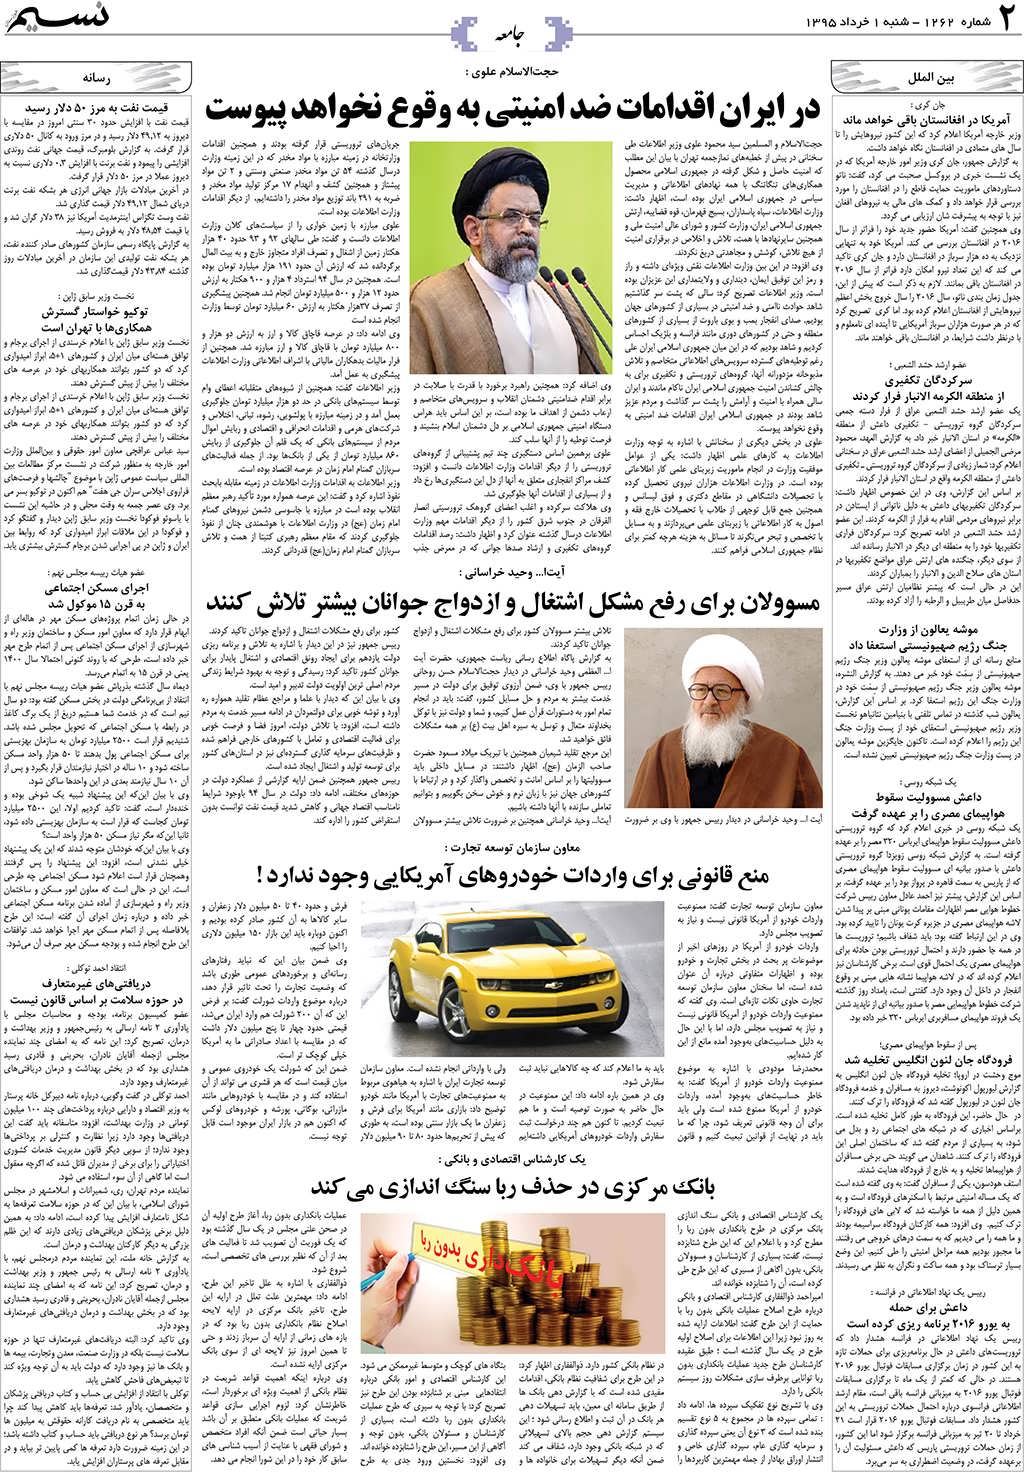 صفحه جامعه روزنامه نسیم شماره 1262